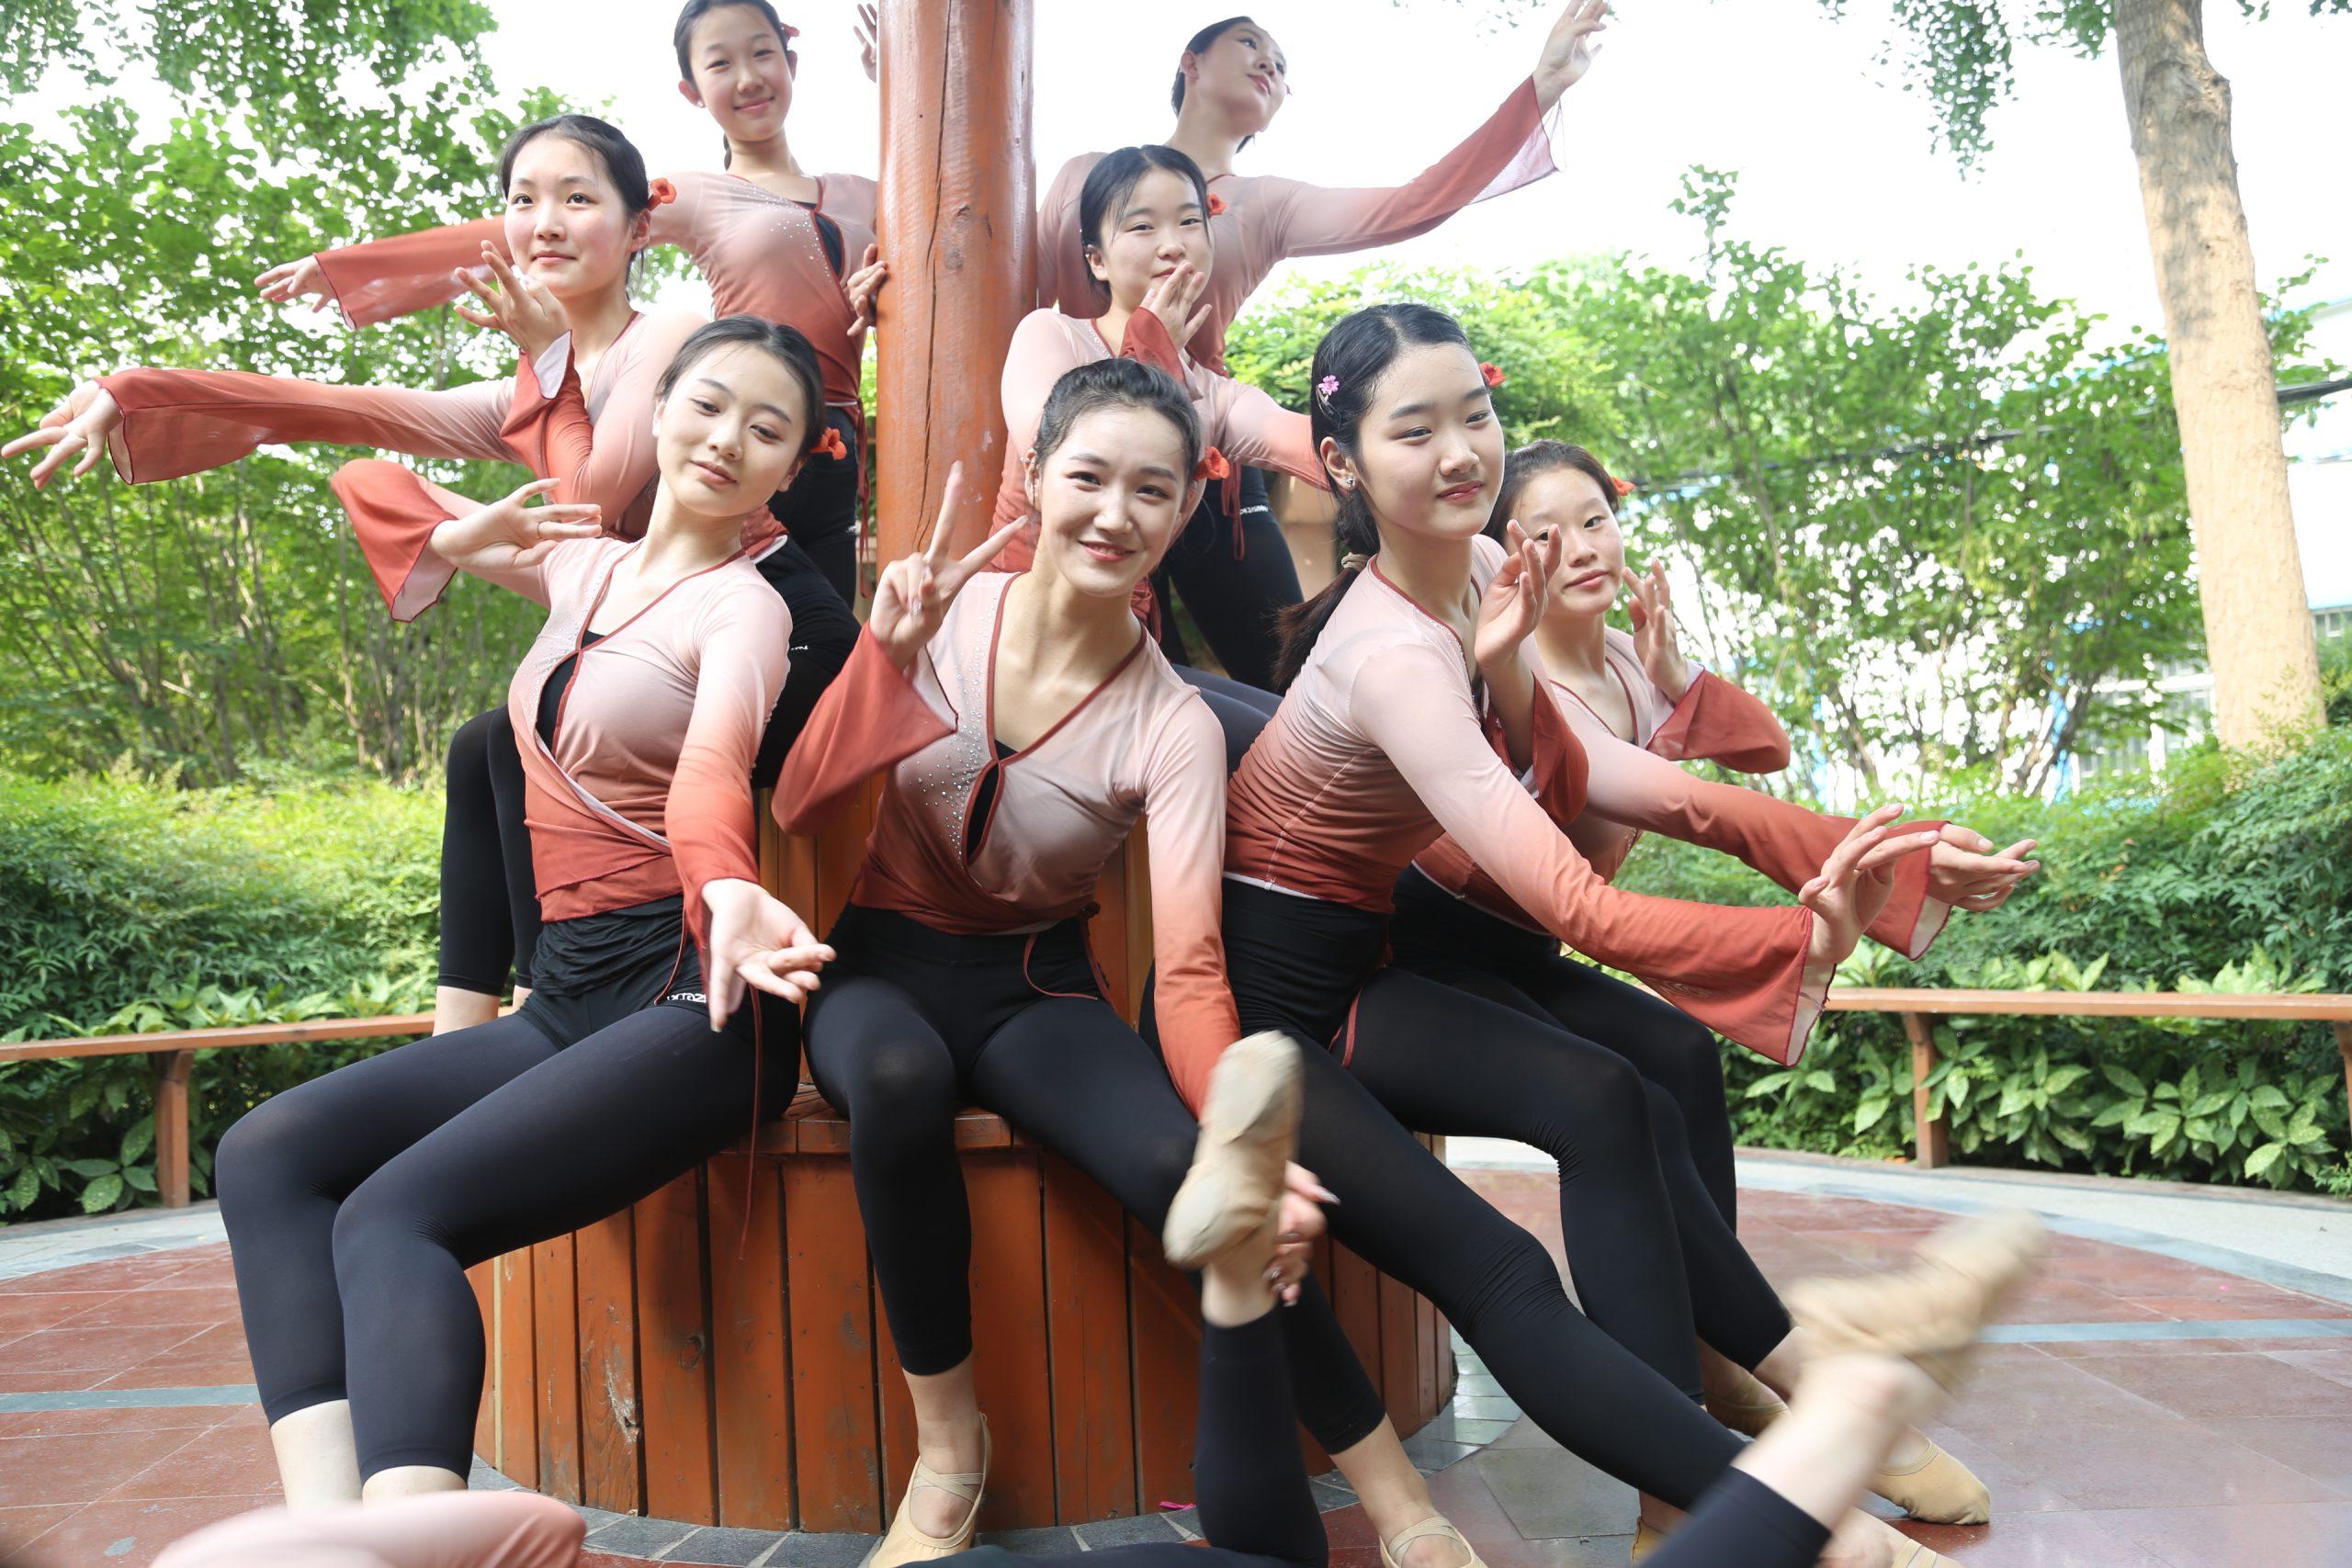 舞蹈表演专业的同学们在校园拍照留念 (http://www.huazistudio.com/) 校内新闻 第3张